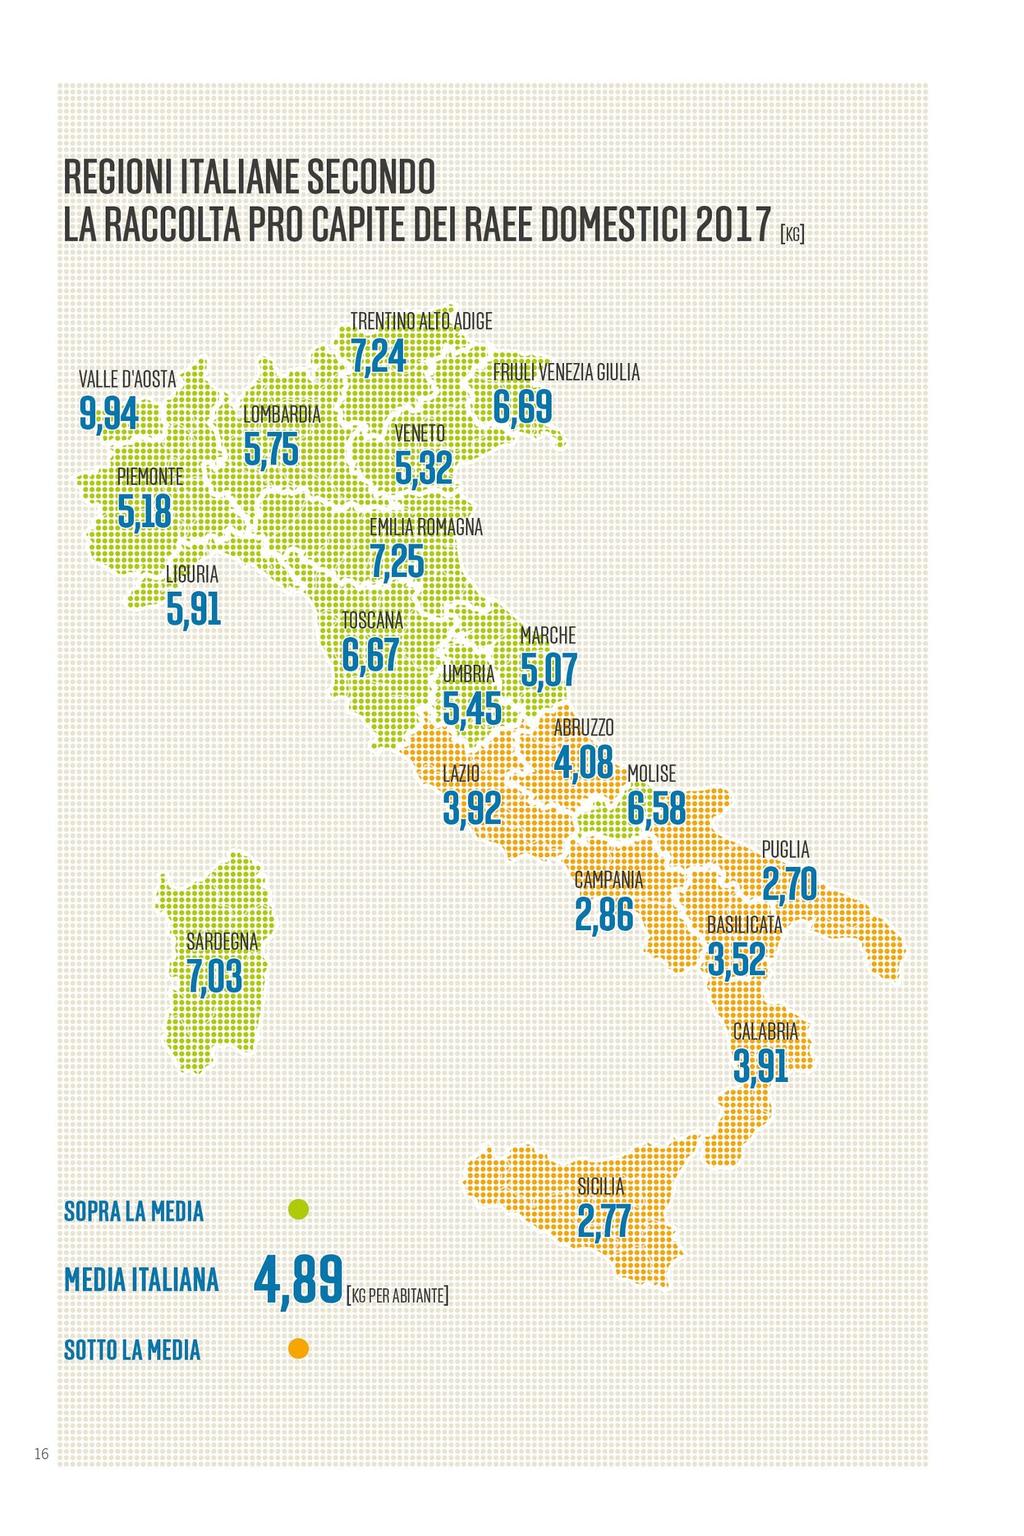 La classifica delle Regioni Nella classifica delle Regioni, nell area settentrionale la Valle d Aosta conferma il primato nazionale nella raccolta pro capite con 9,94 kg di RAEE per abitante.